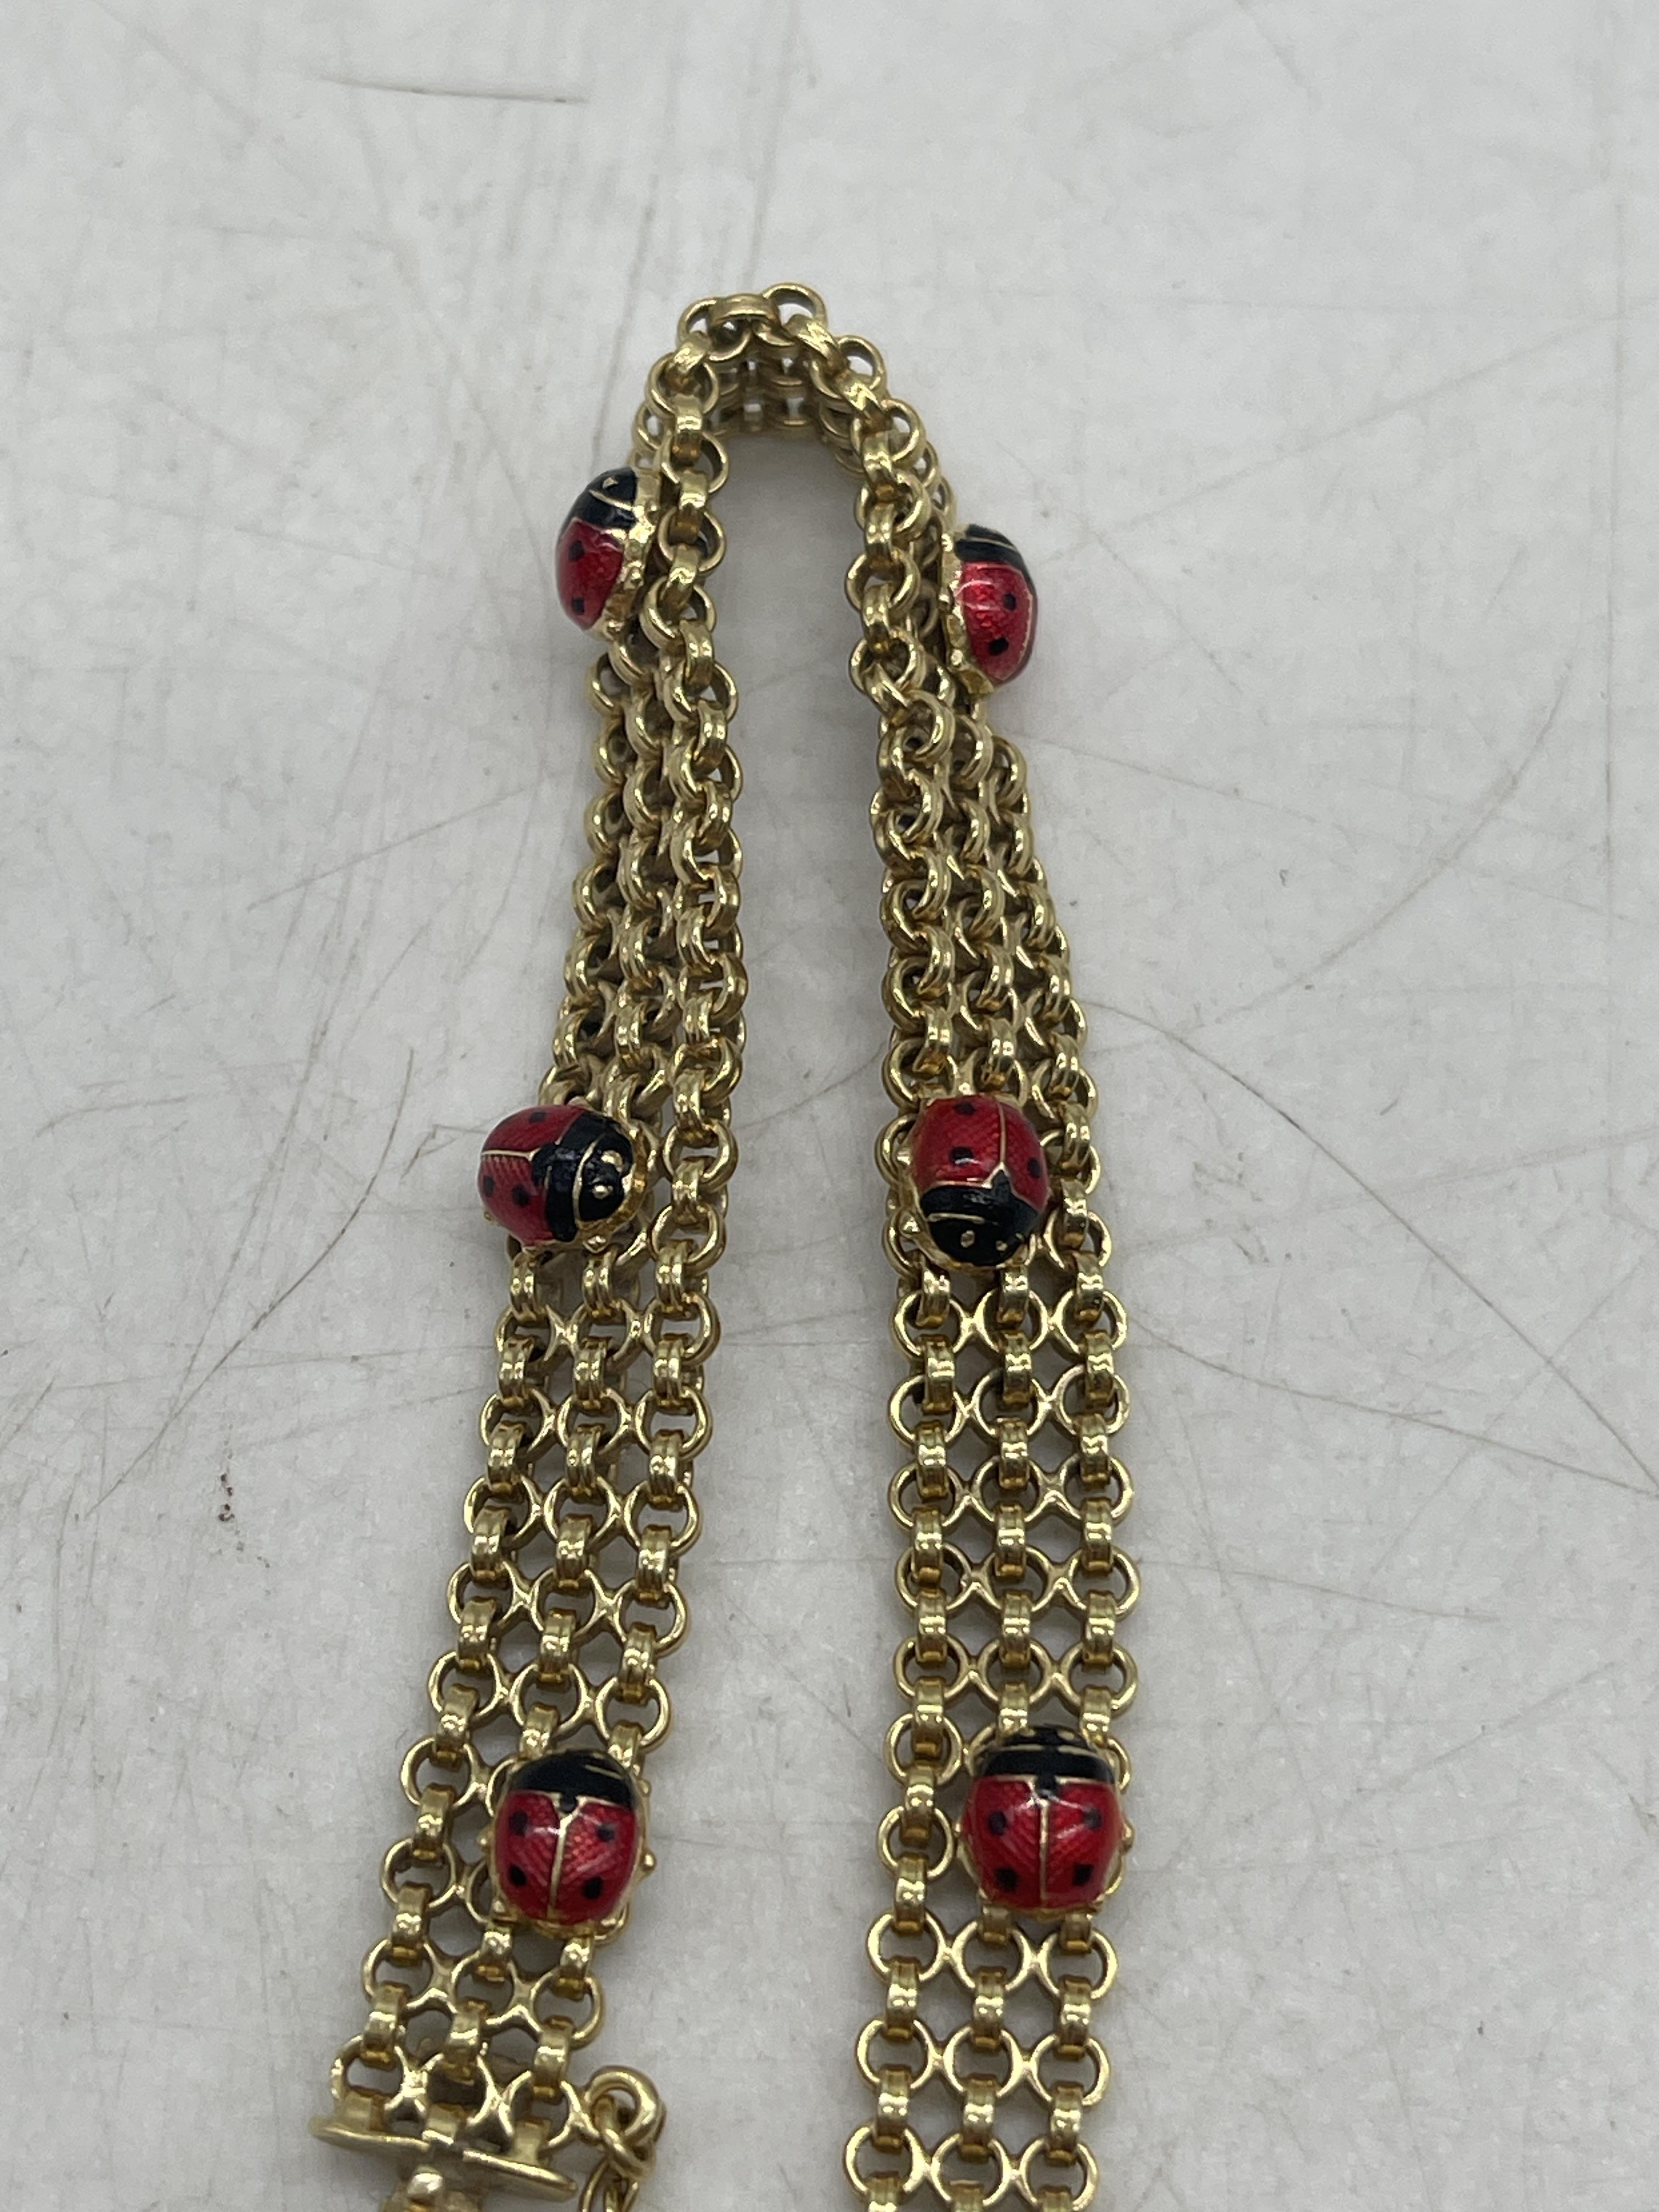 9ct Gold Ladybug Bracelet. - Image 4 of 6